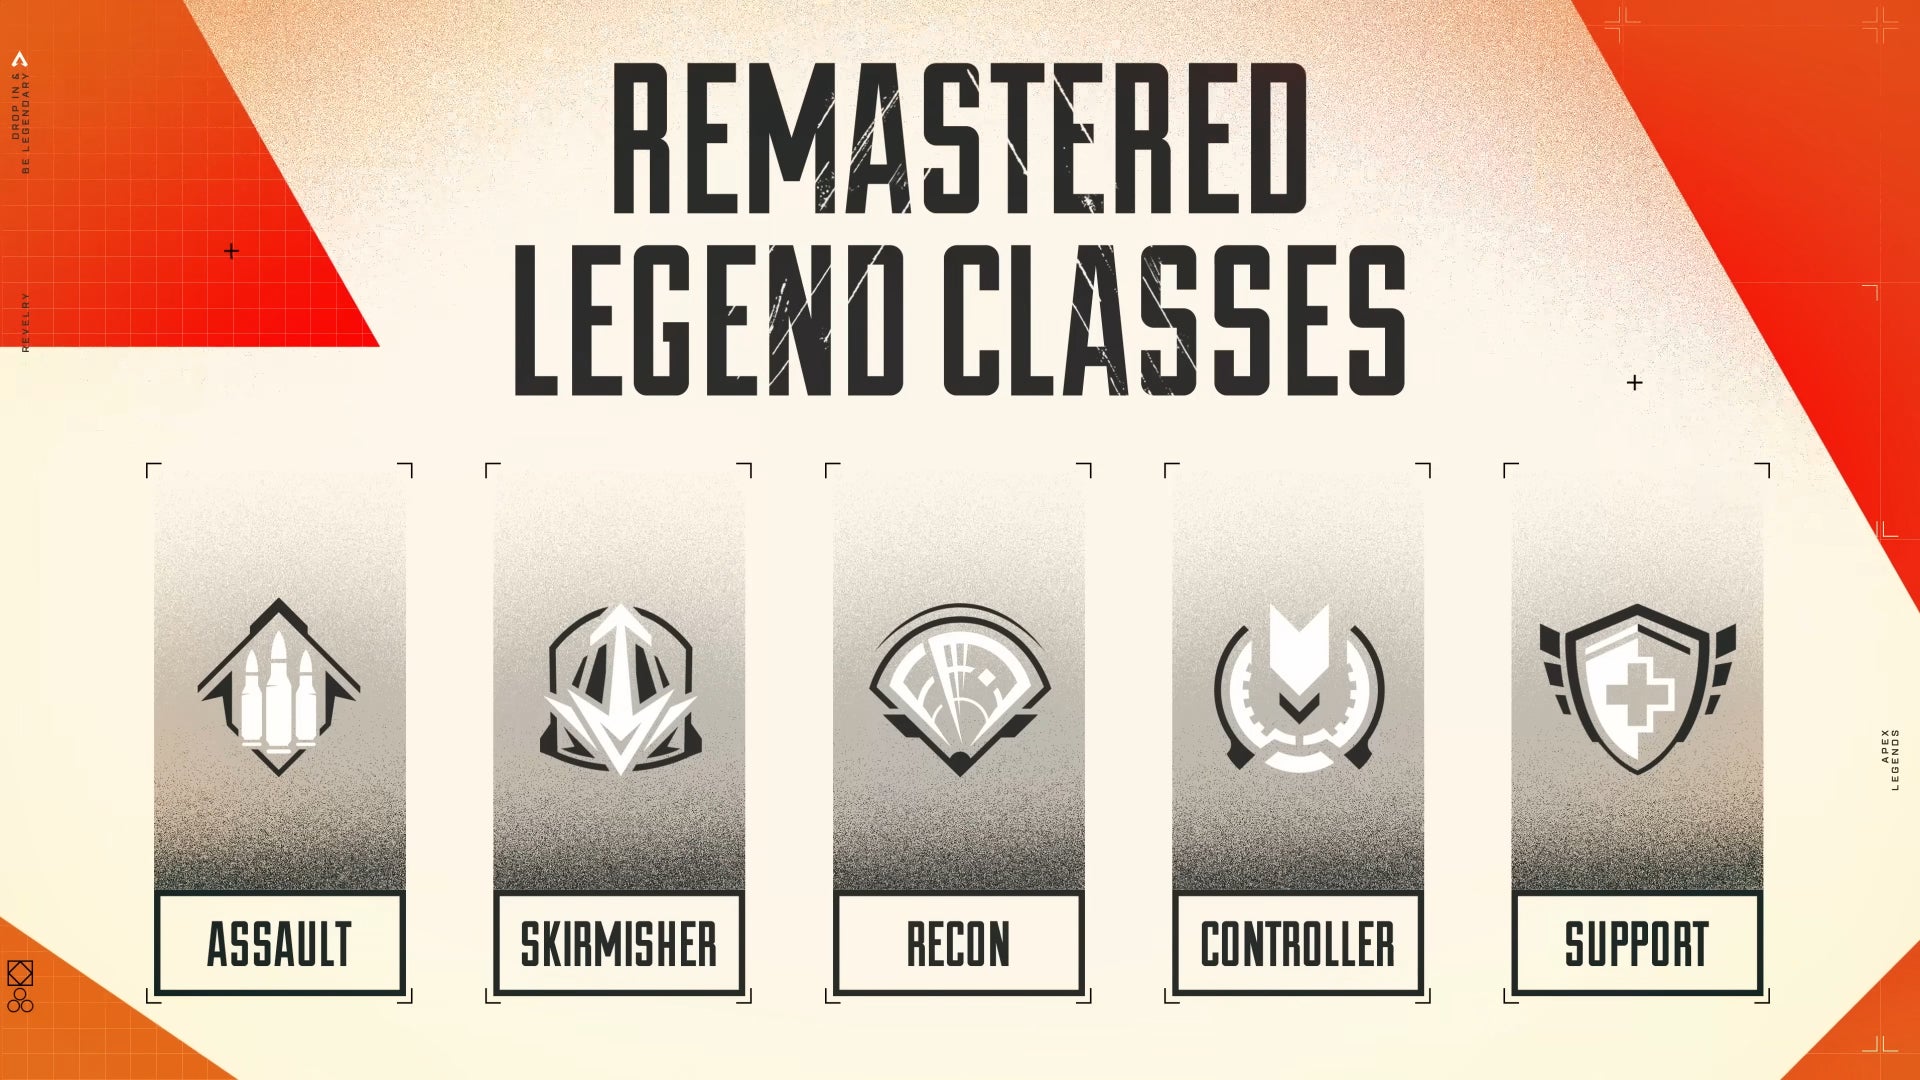 Apex Legends'taki yeni Legend sınıflarının bir infografik.  Soldan sağa: Assault, Skirmisher, Recon, Controller ve Support.